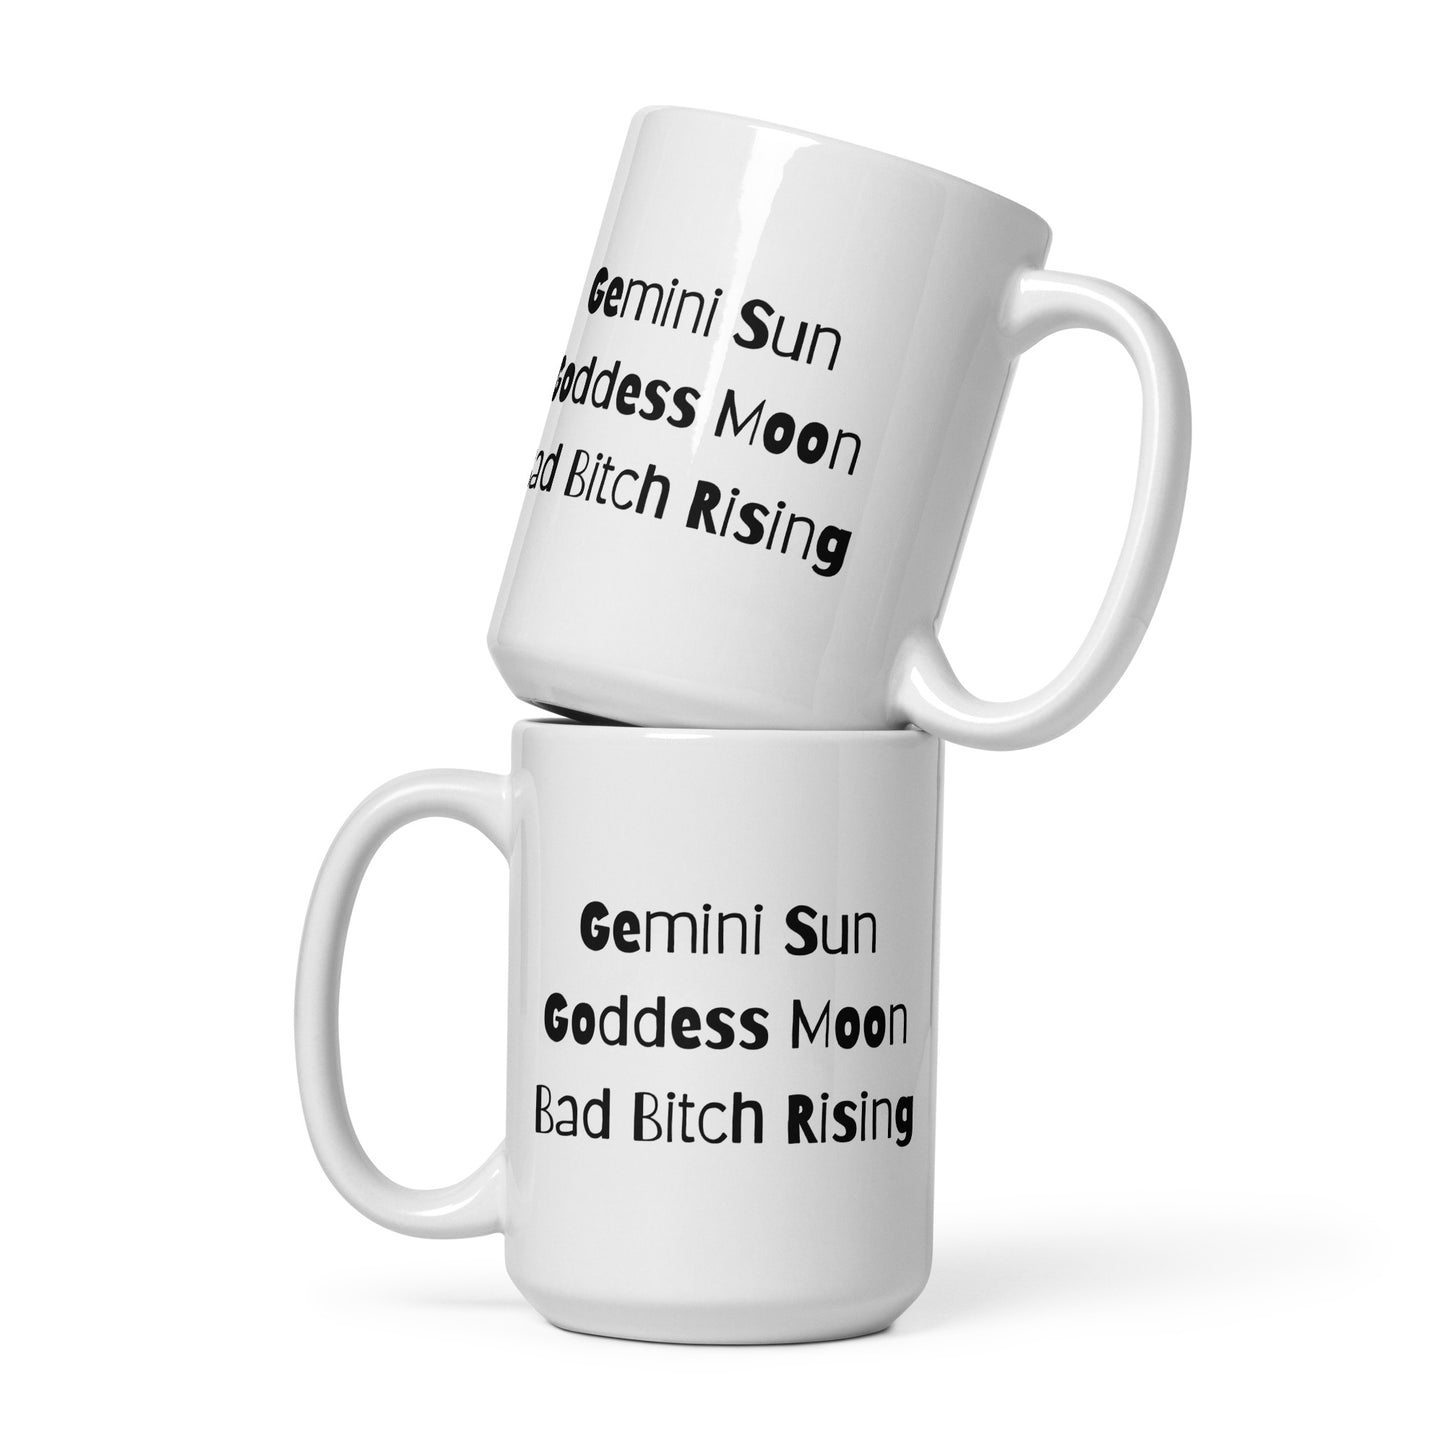 Gemini Sun Mug